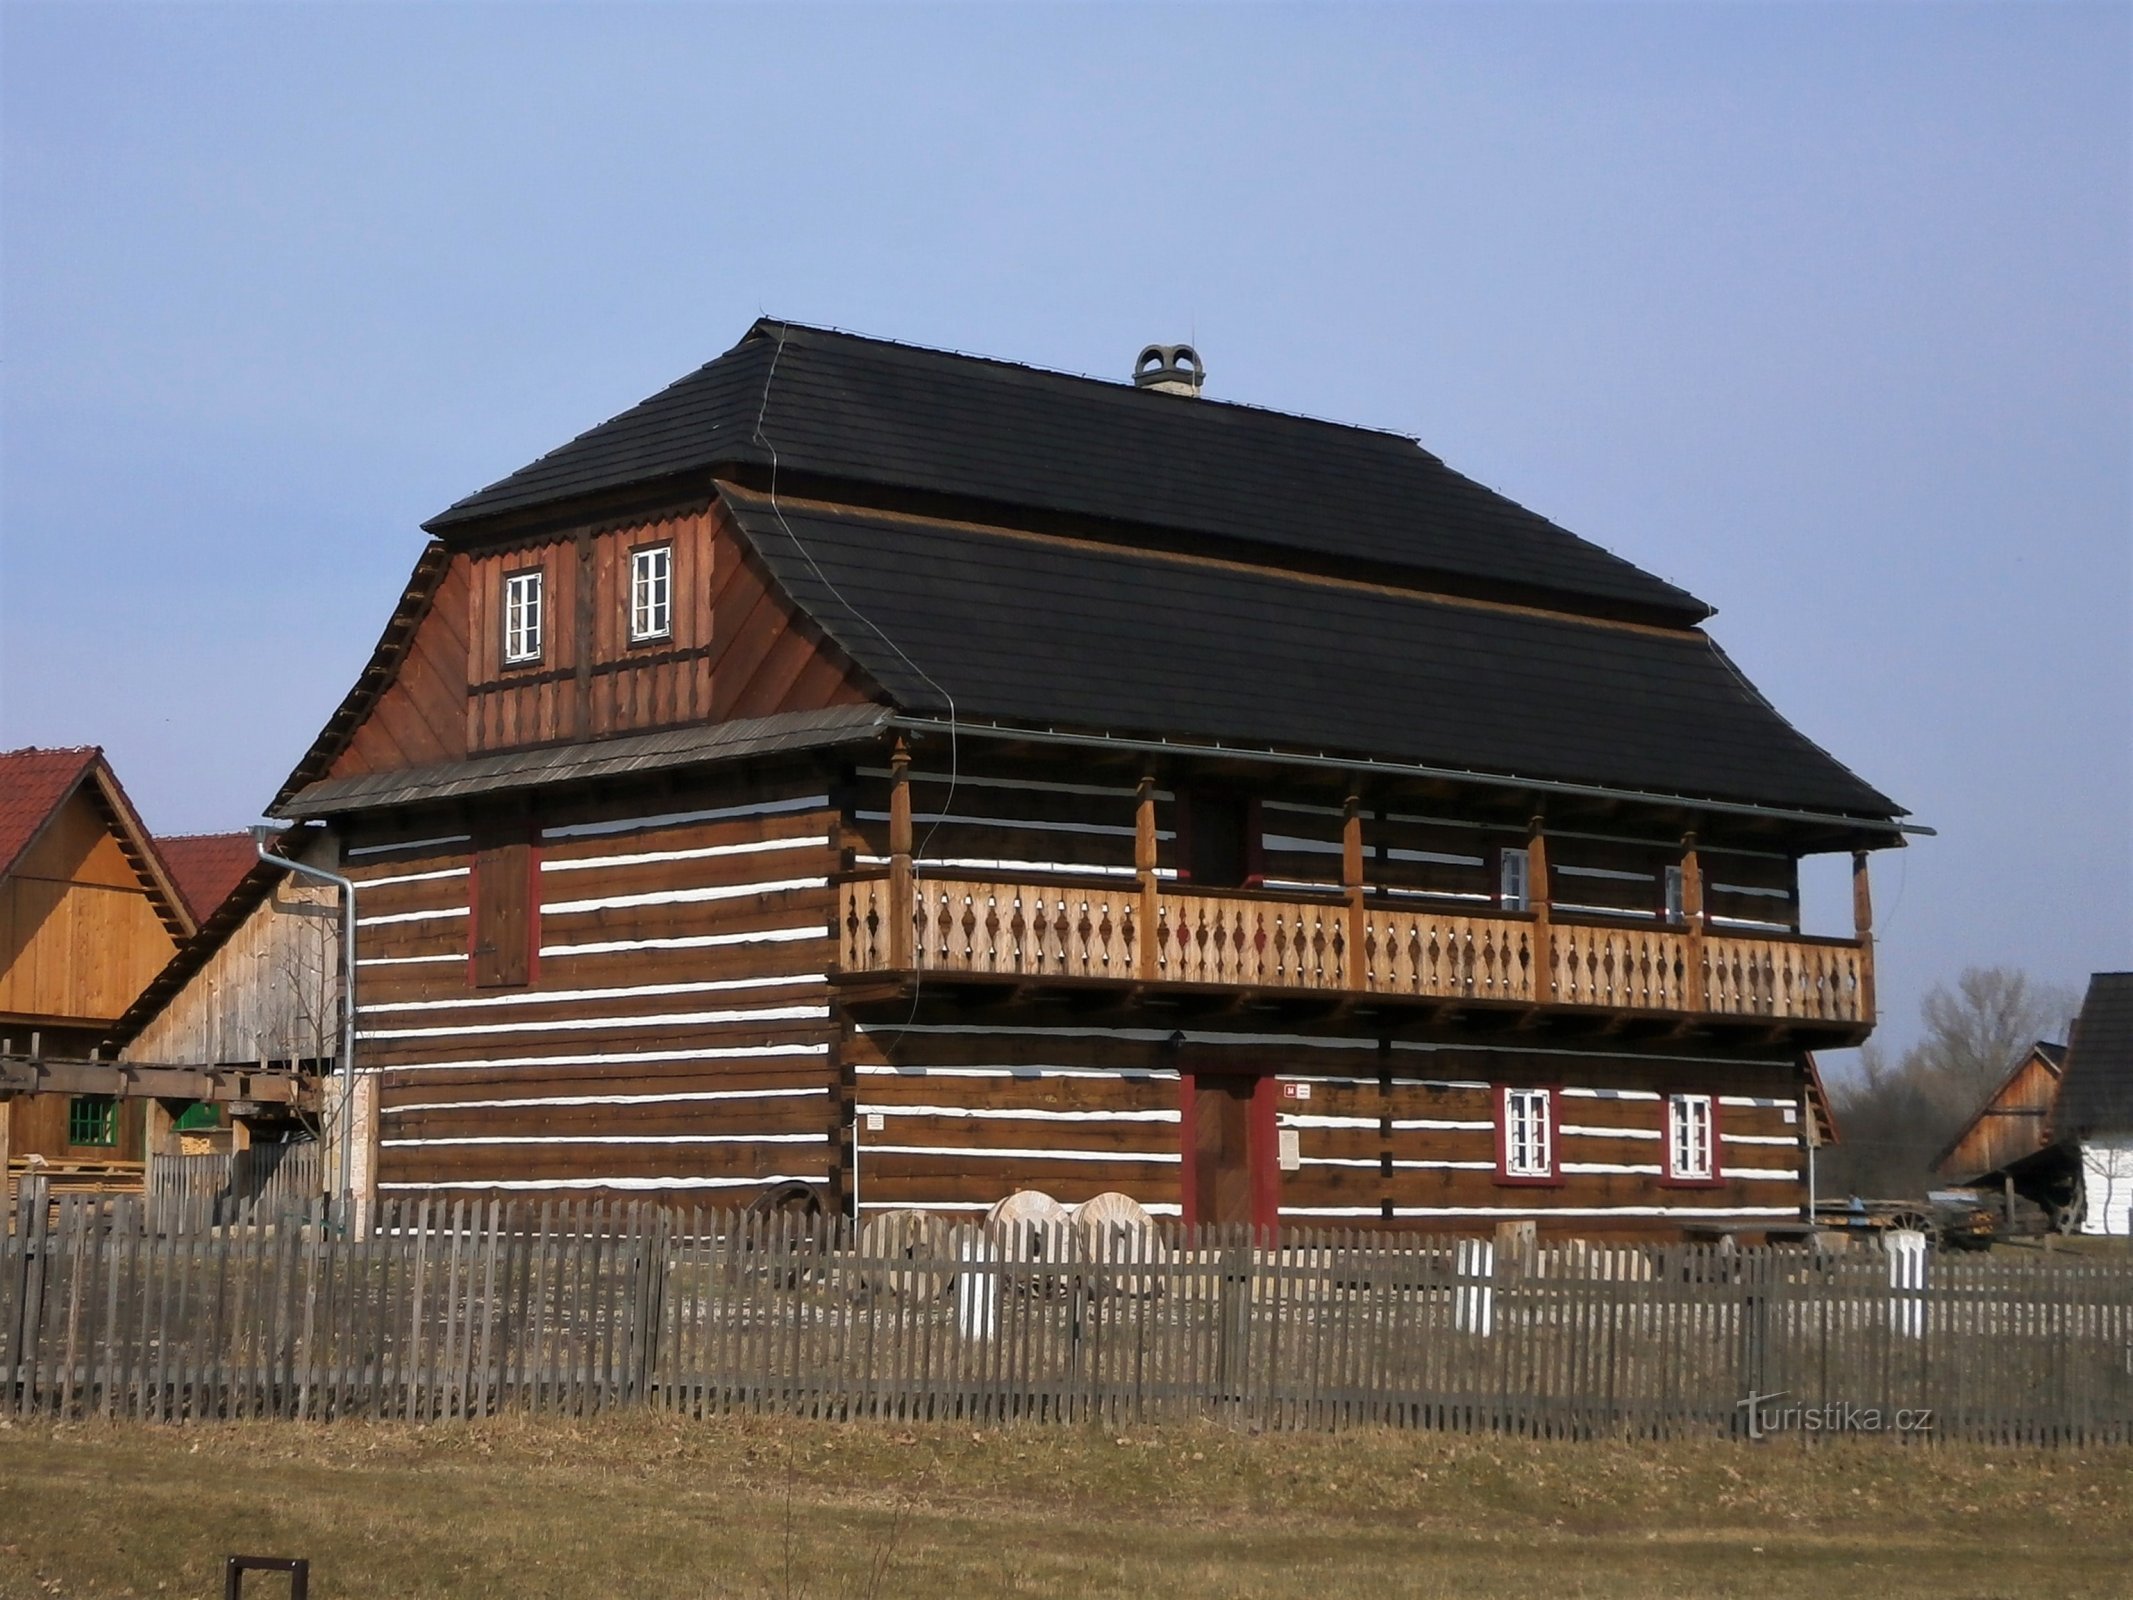 Bản sao của nhà máy Béleč trong bảo tàng ngoài trời Krňovick (ngày 13.3.2017 tháng XNUMX năm XNUMX)